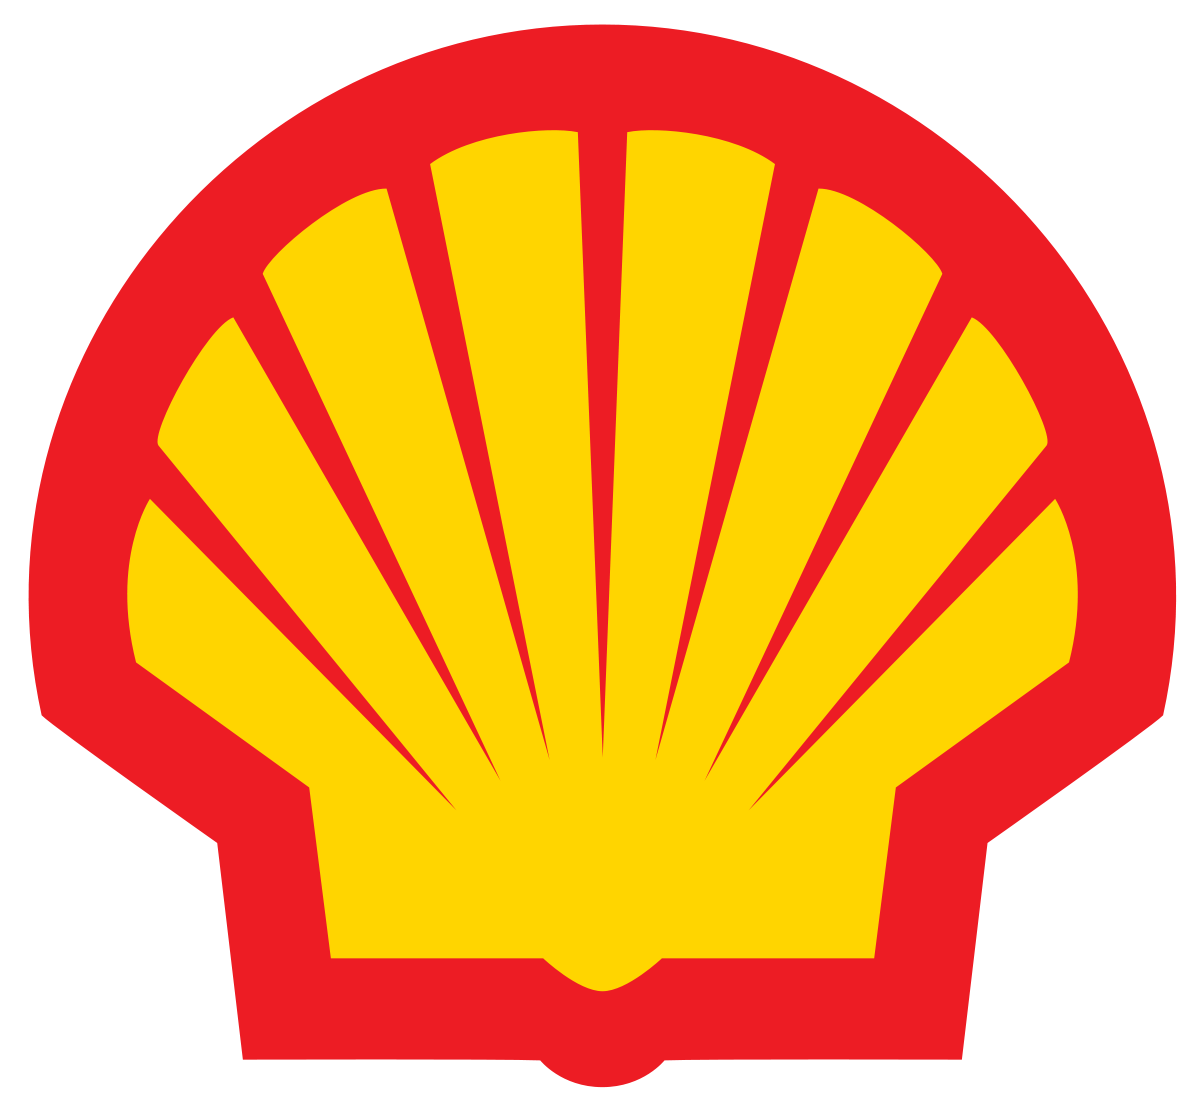 https://0201.nccdn.net/1_2/000/000/165/355/1200px-Shell_logo.svg-1200x1112.png